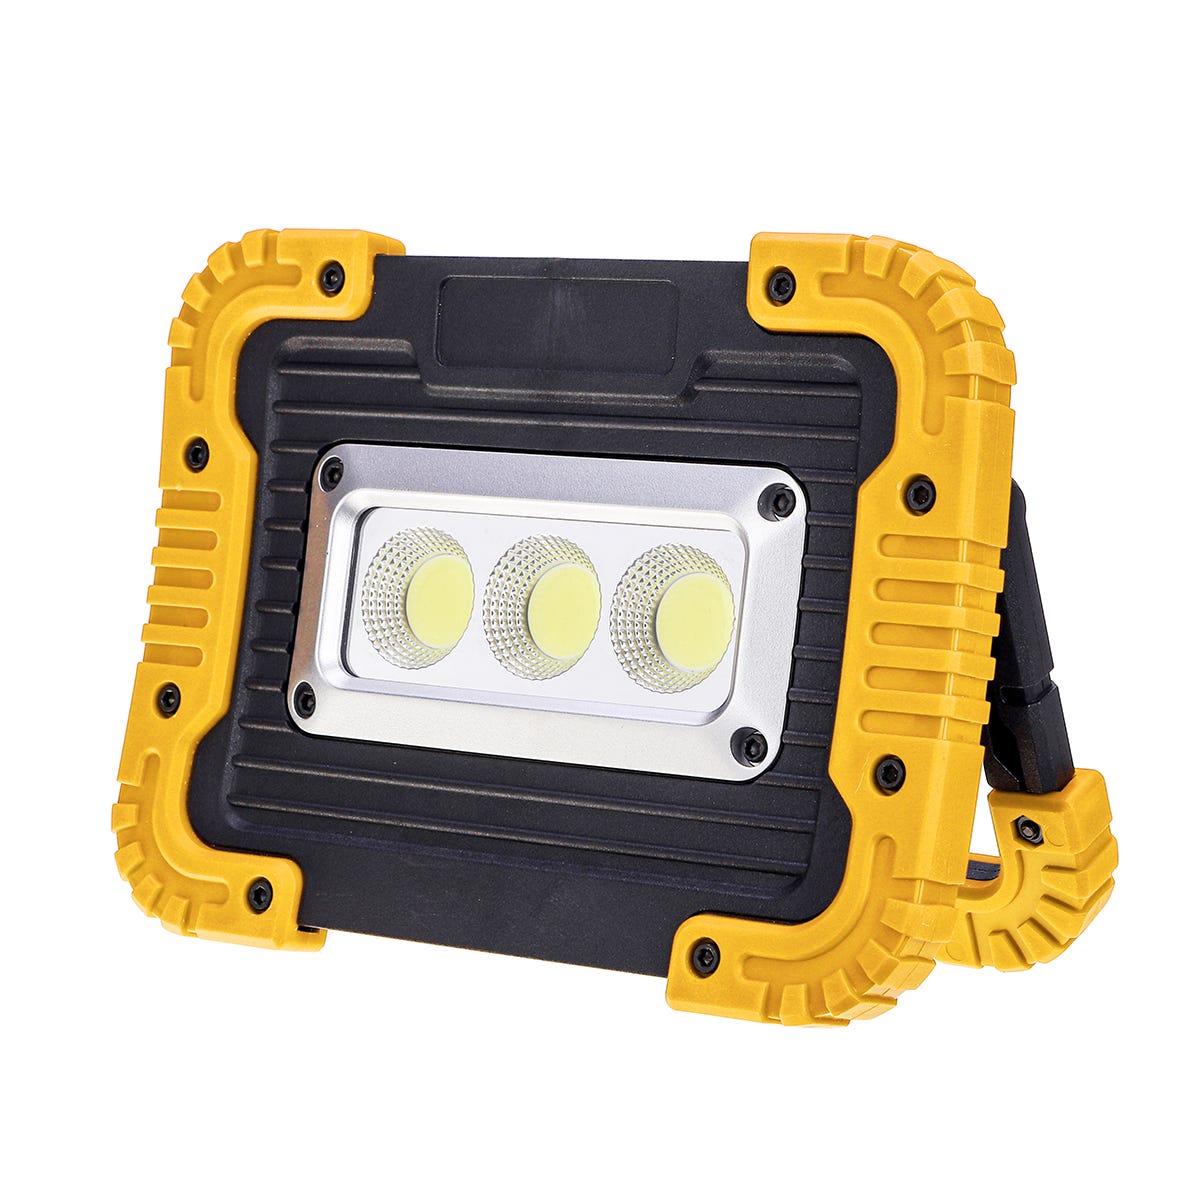 Elmark Work - lampe de travail rechargeable - 10W LED incl. - IP44 - jaune